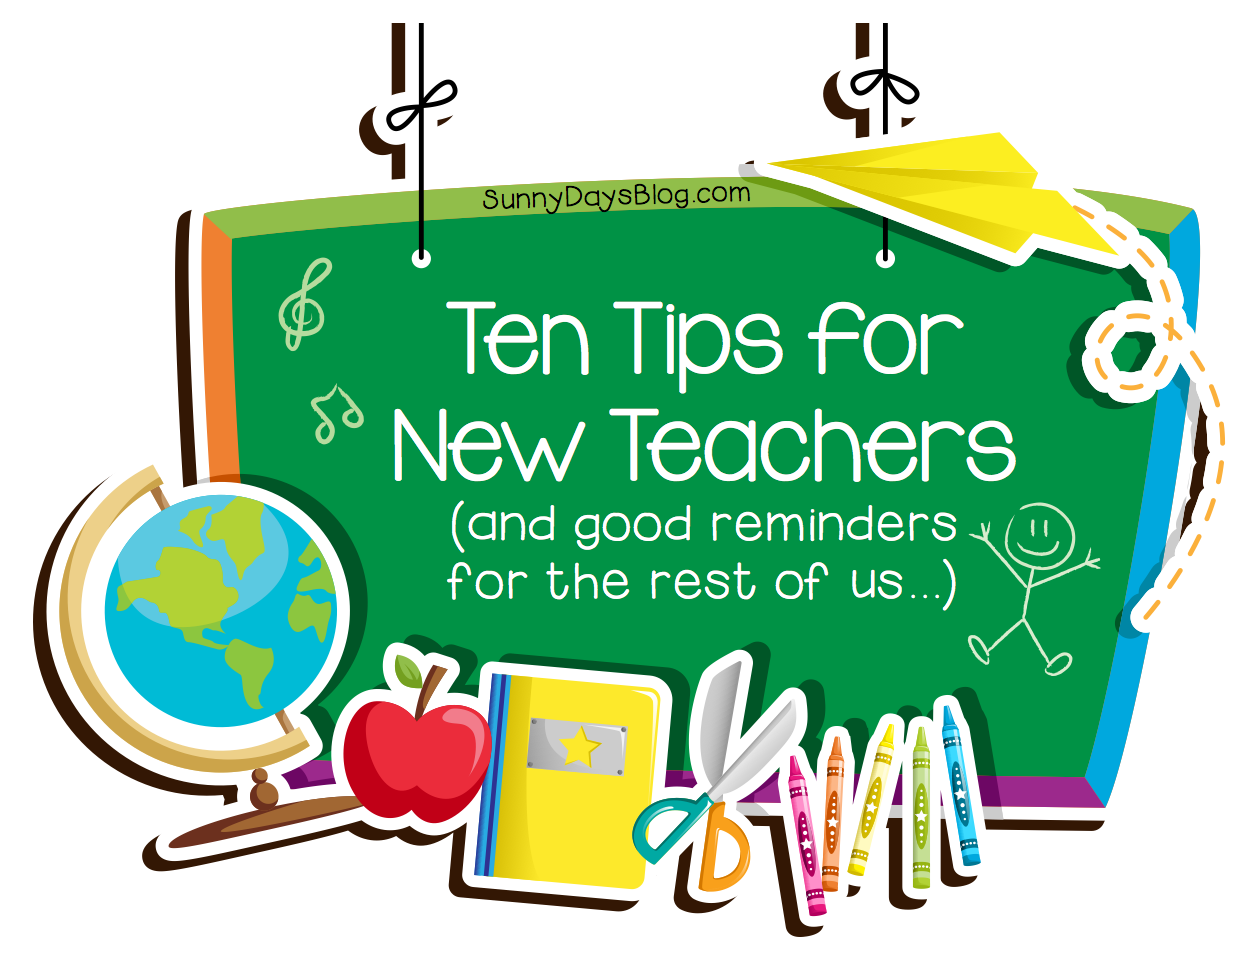 New teacher. Teaching Tips. Teacher's Pointer. Teach about Sunny Day. We have a new teacher